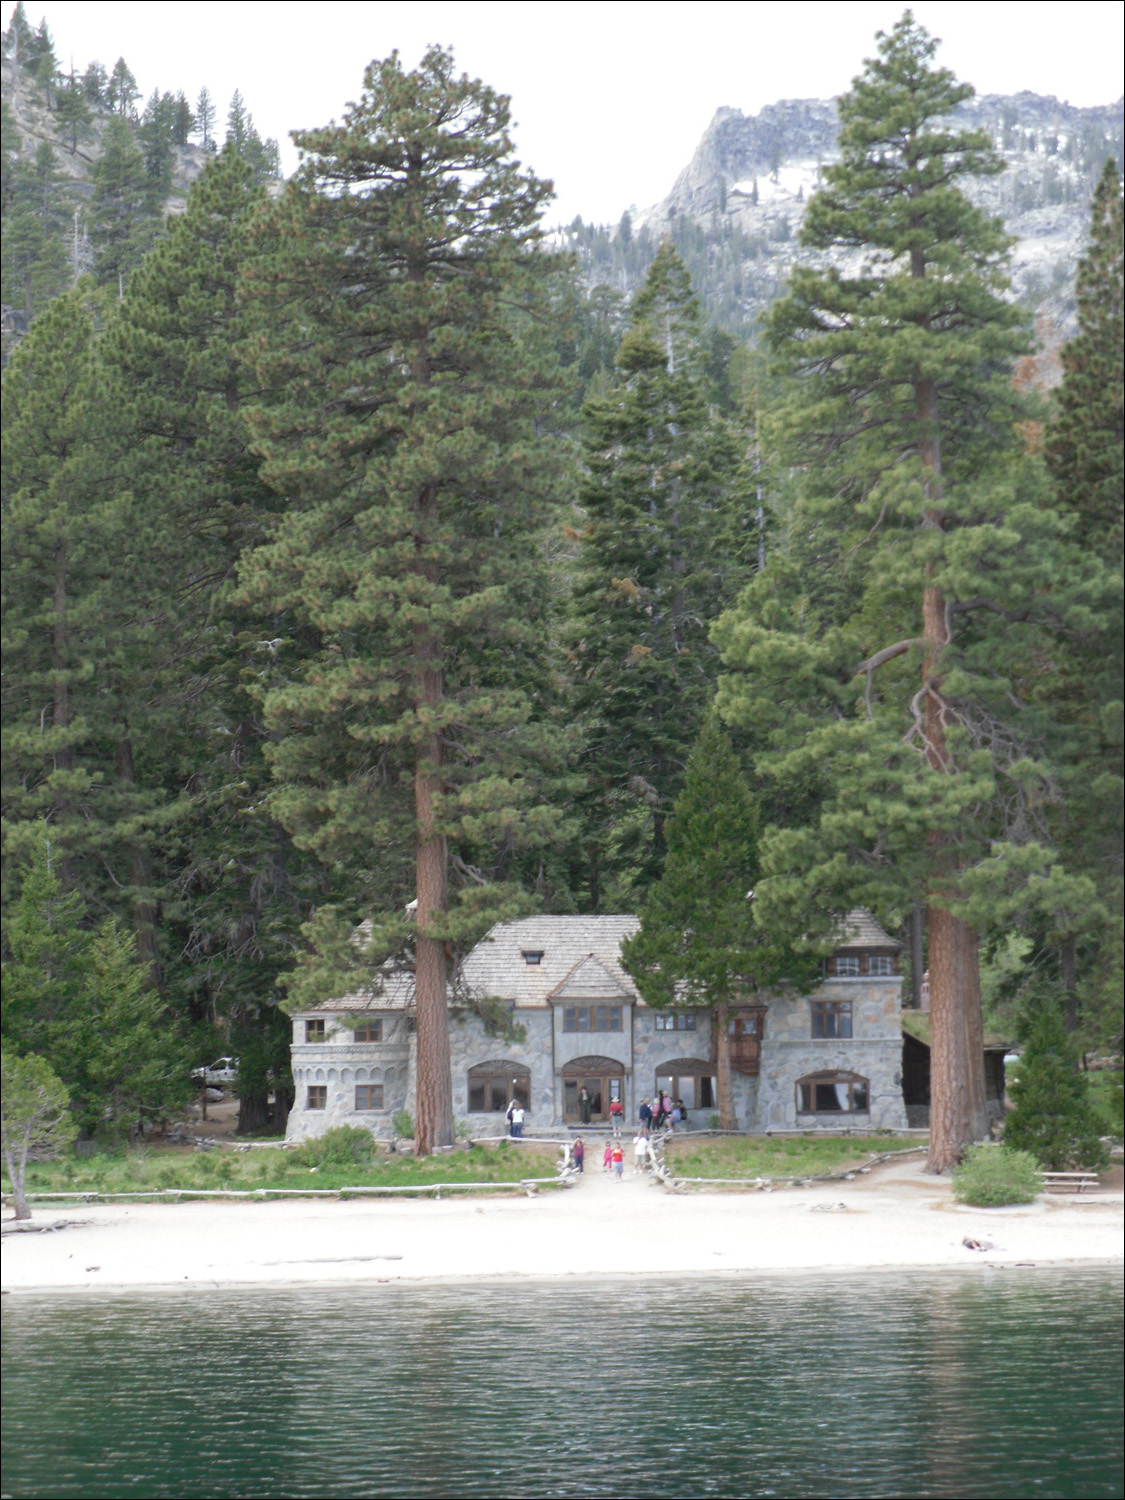 MS Dixie 2 Lake Tahoe Cruise- Vikingsholm mansion in Emerald Bay